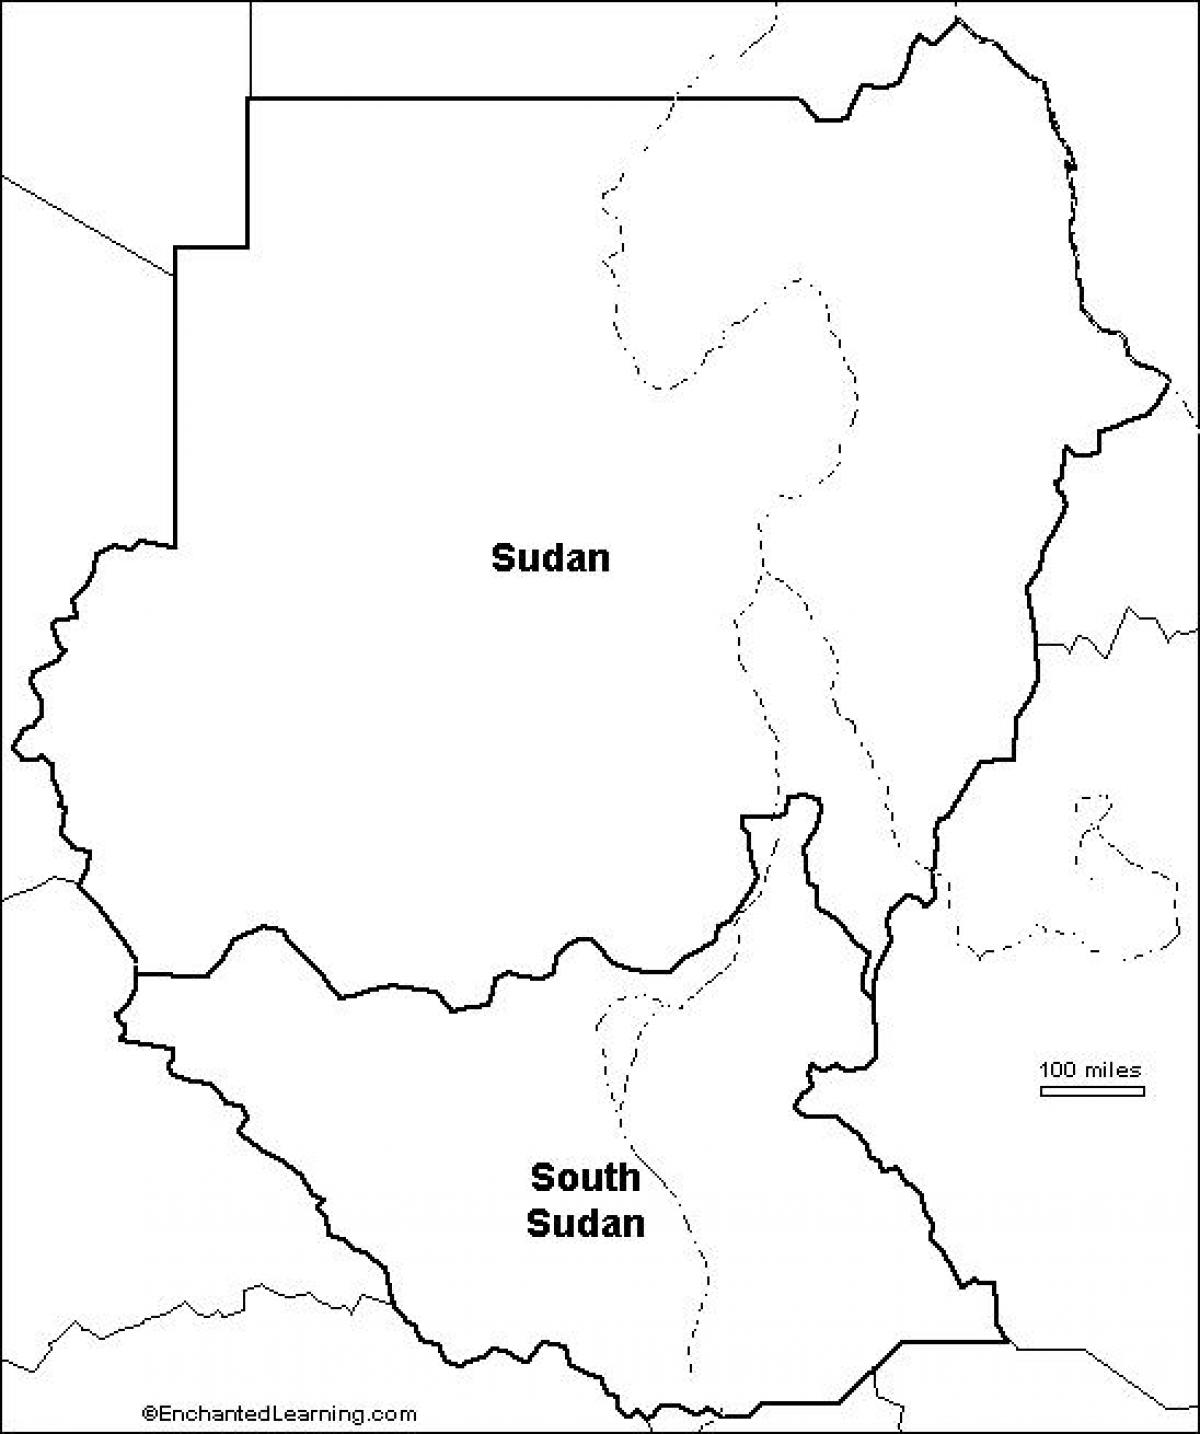 نقشہ سوڈان کی خالی